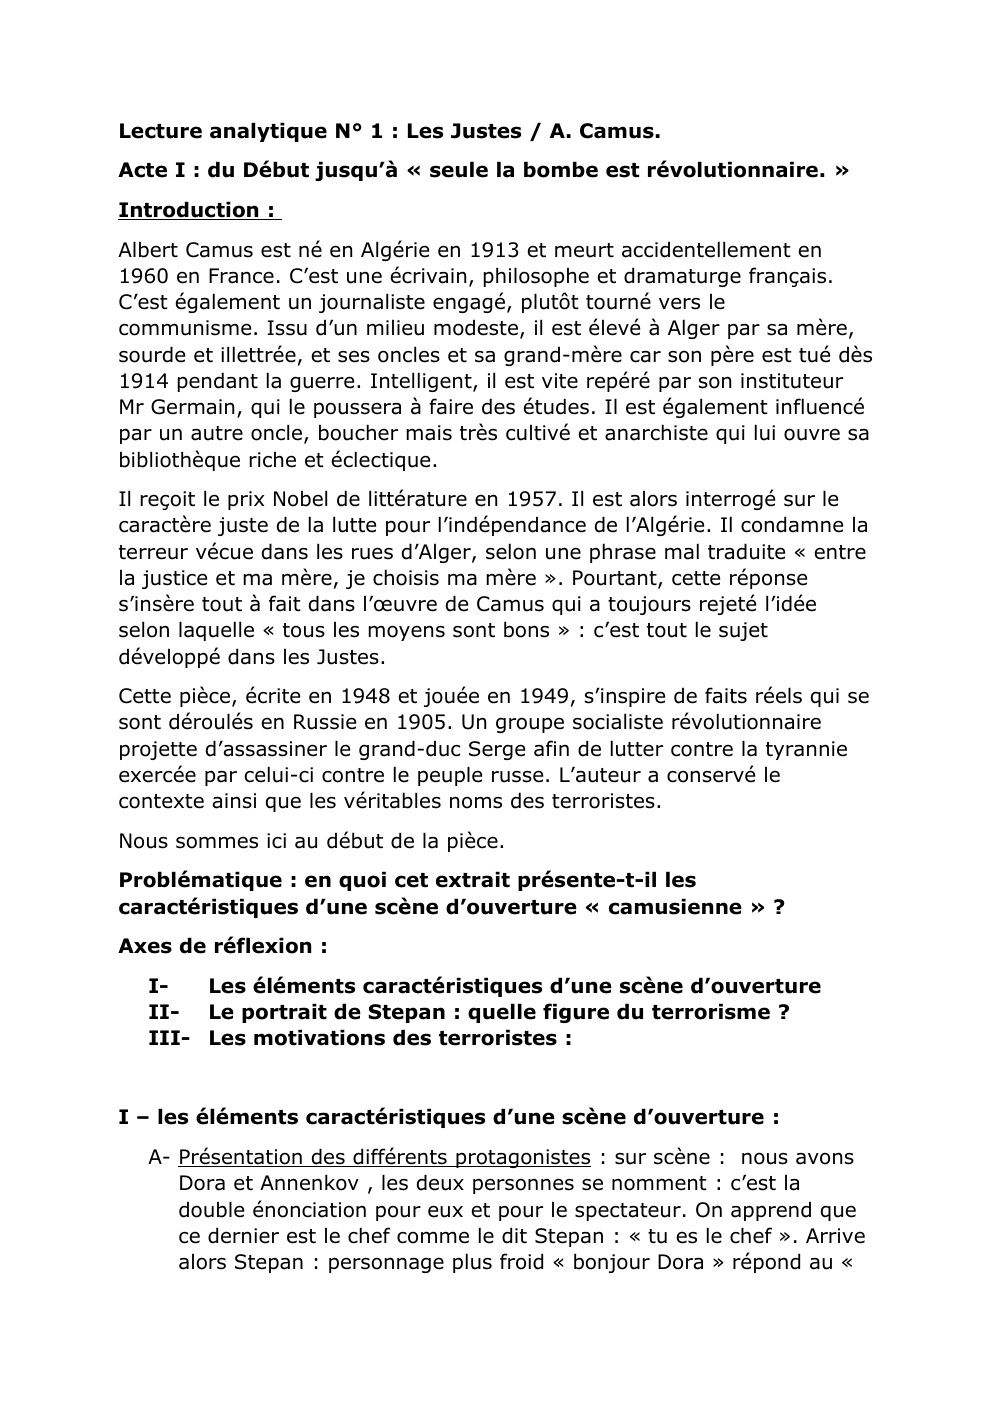 Prévisualisation du document Lecture analytique Les justes Albert Camus/ Acte I